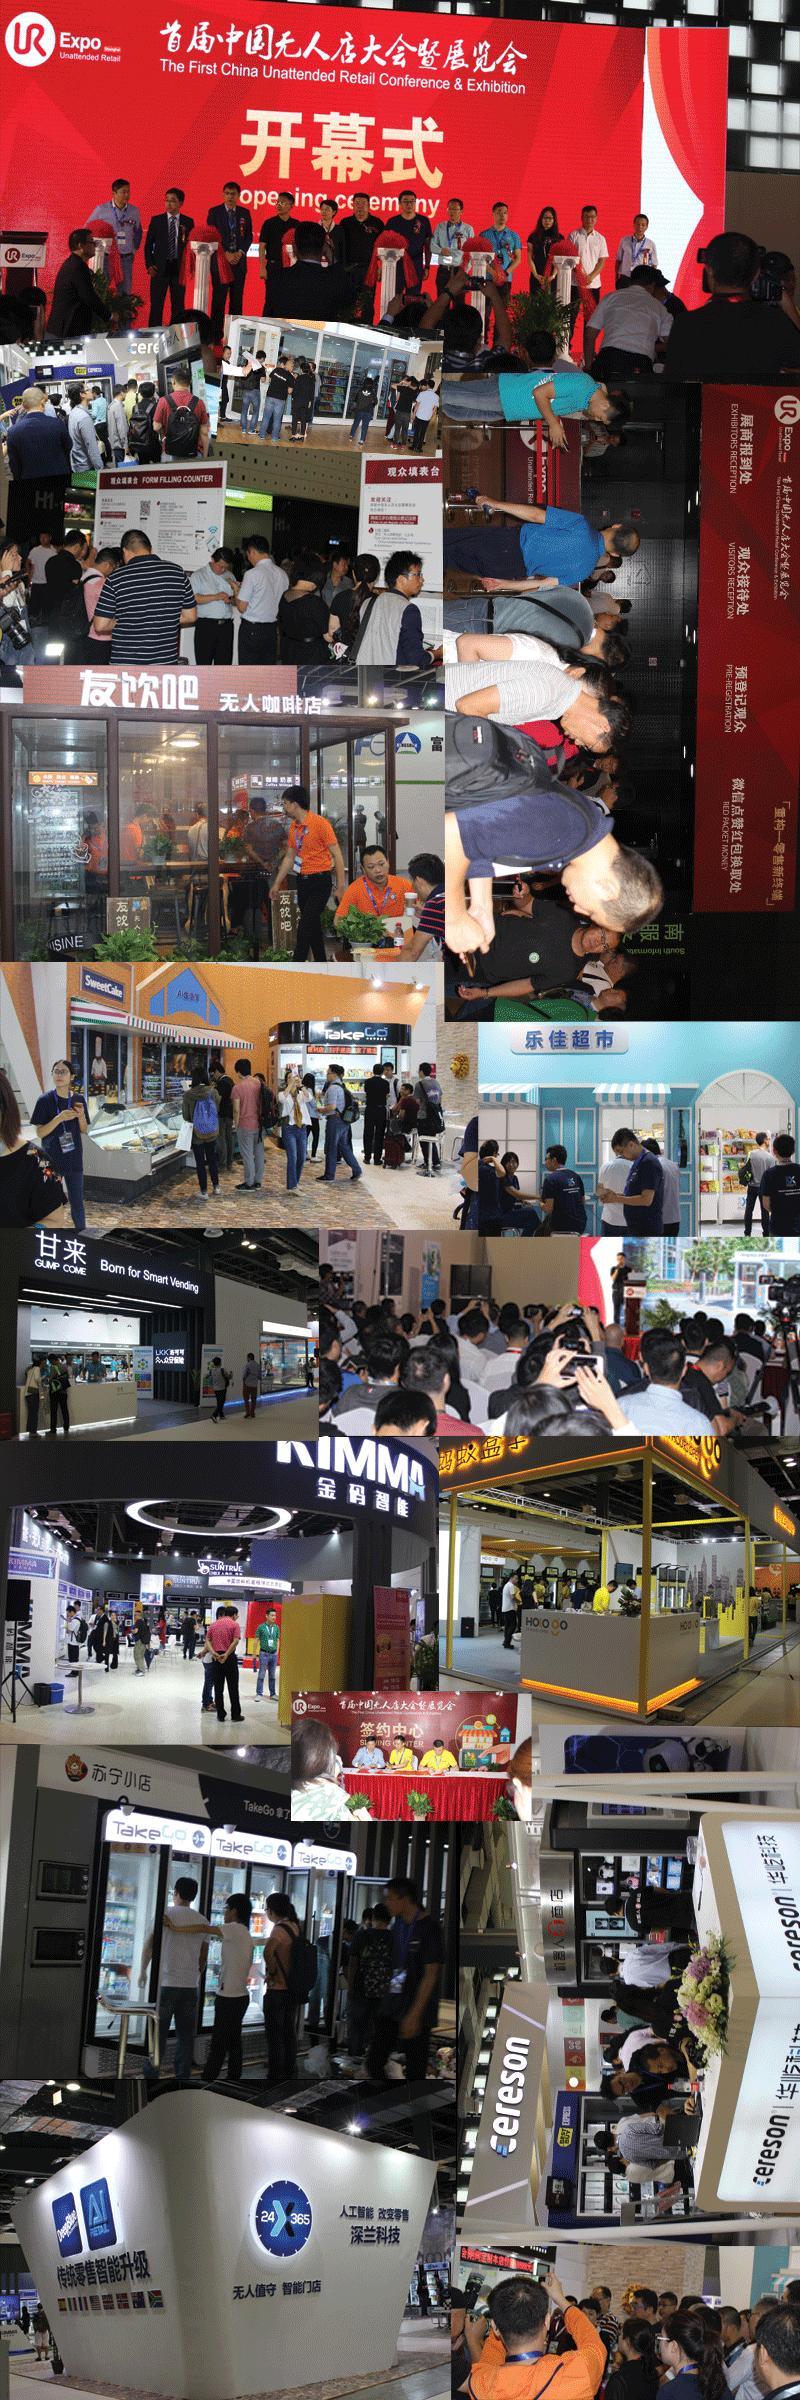 2018第二届中国国际无人店大会 暨上海国际无人值守零售展览会